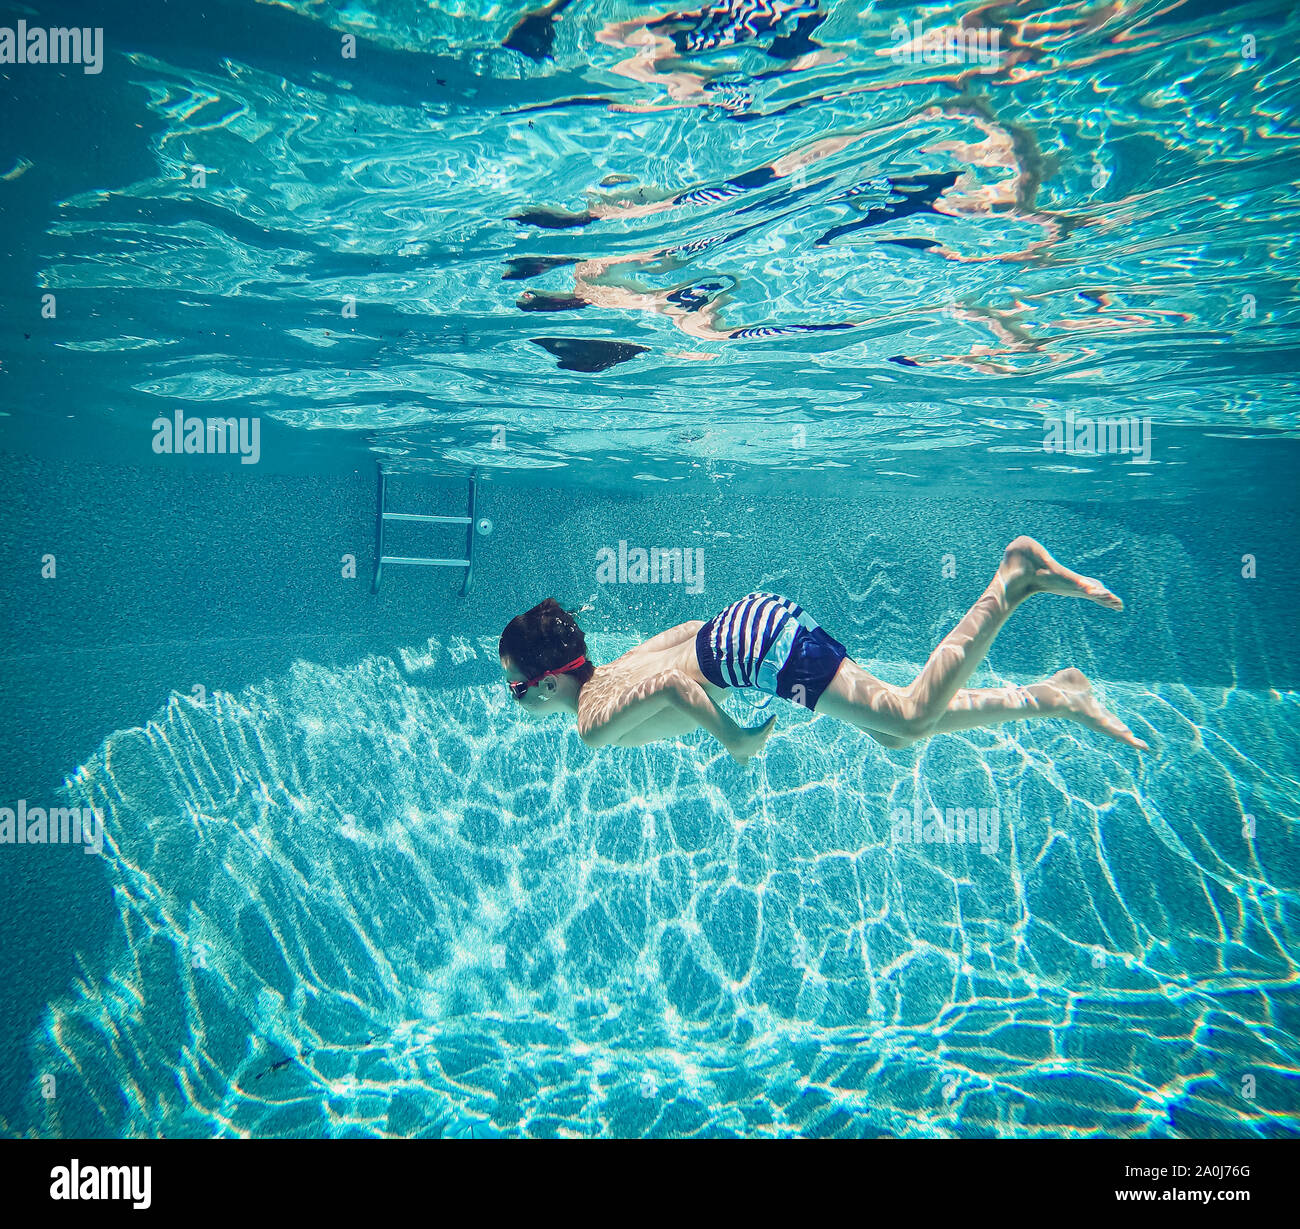 Imagen Submarina de boy nadar en una piscina. Foto de stock